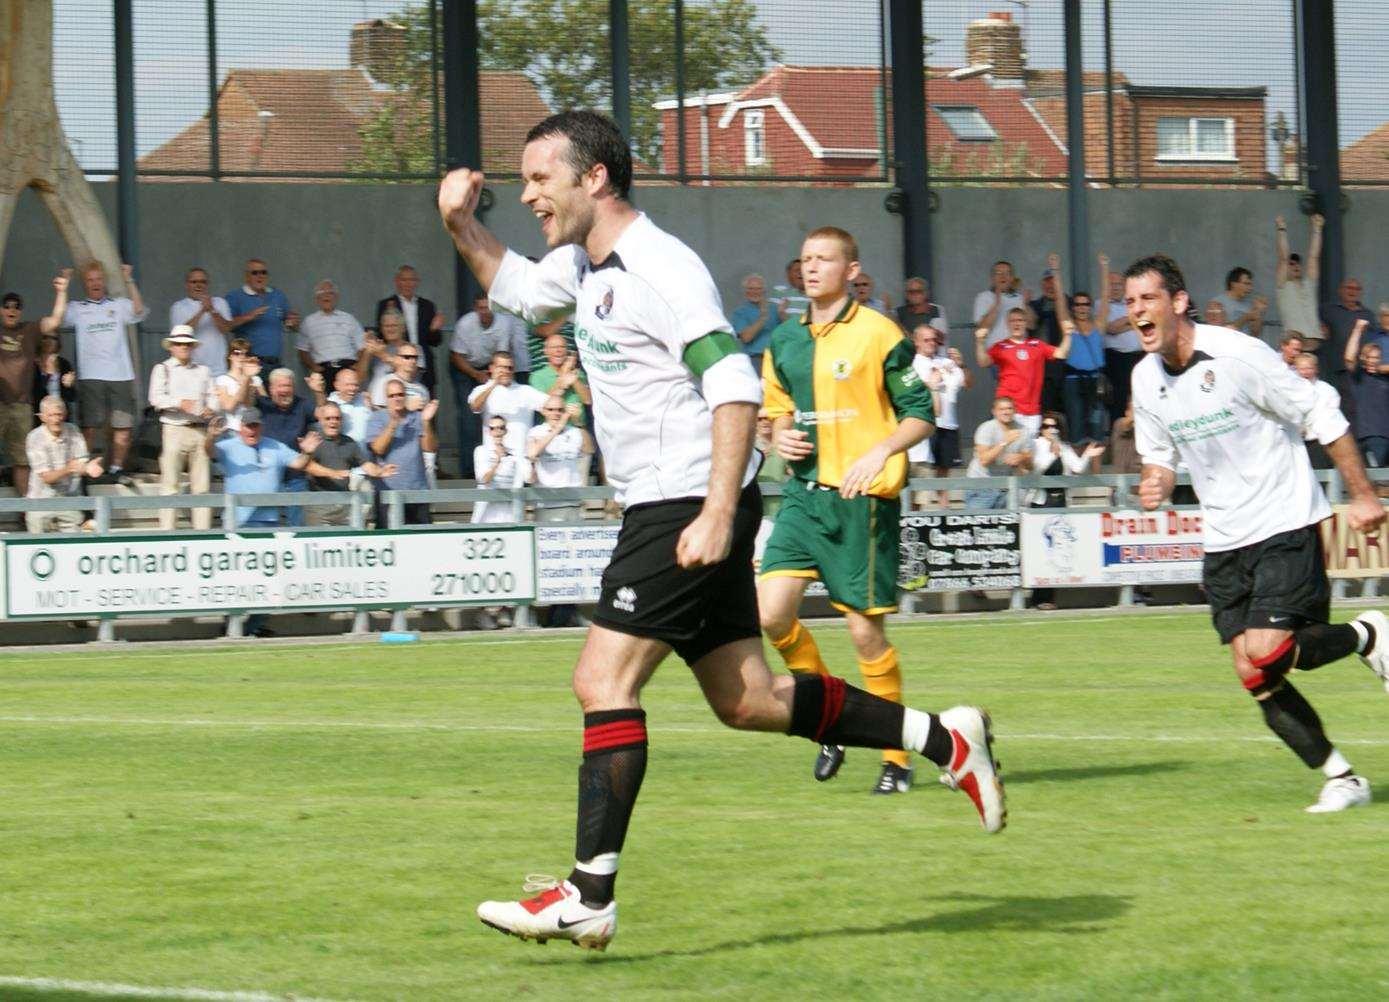 Adam Flanagan celebrates a goal for Dartford during his playing days Picture: Derek Stingemore